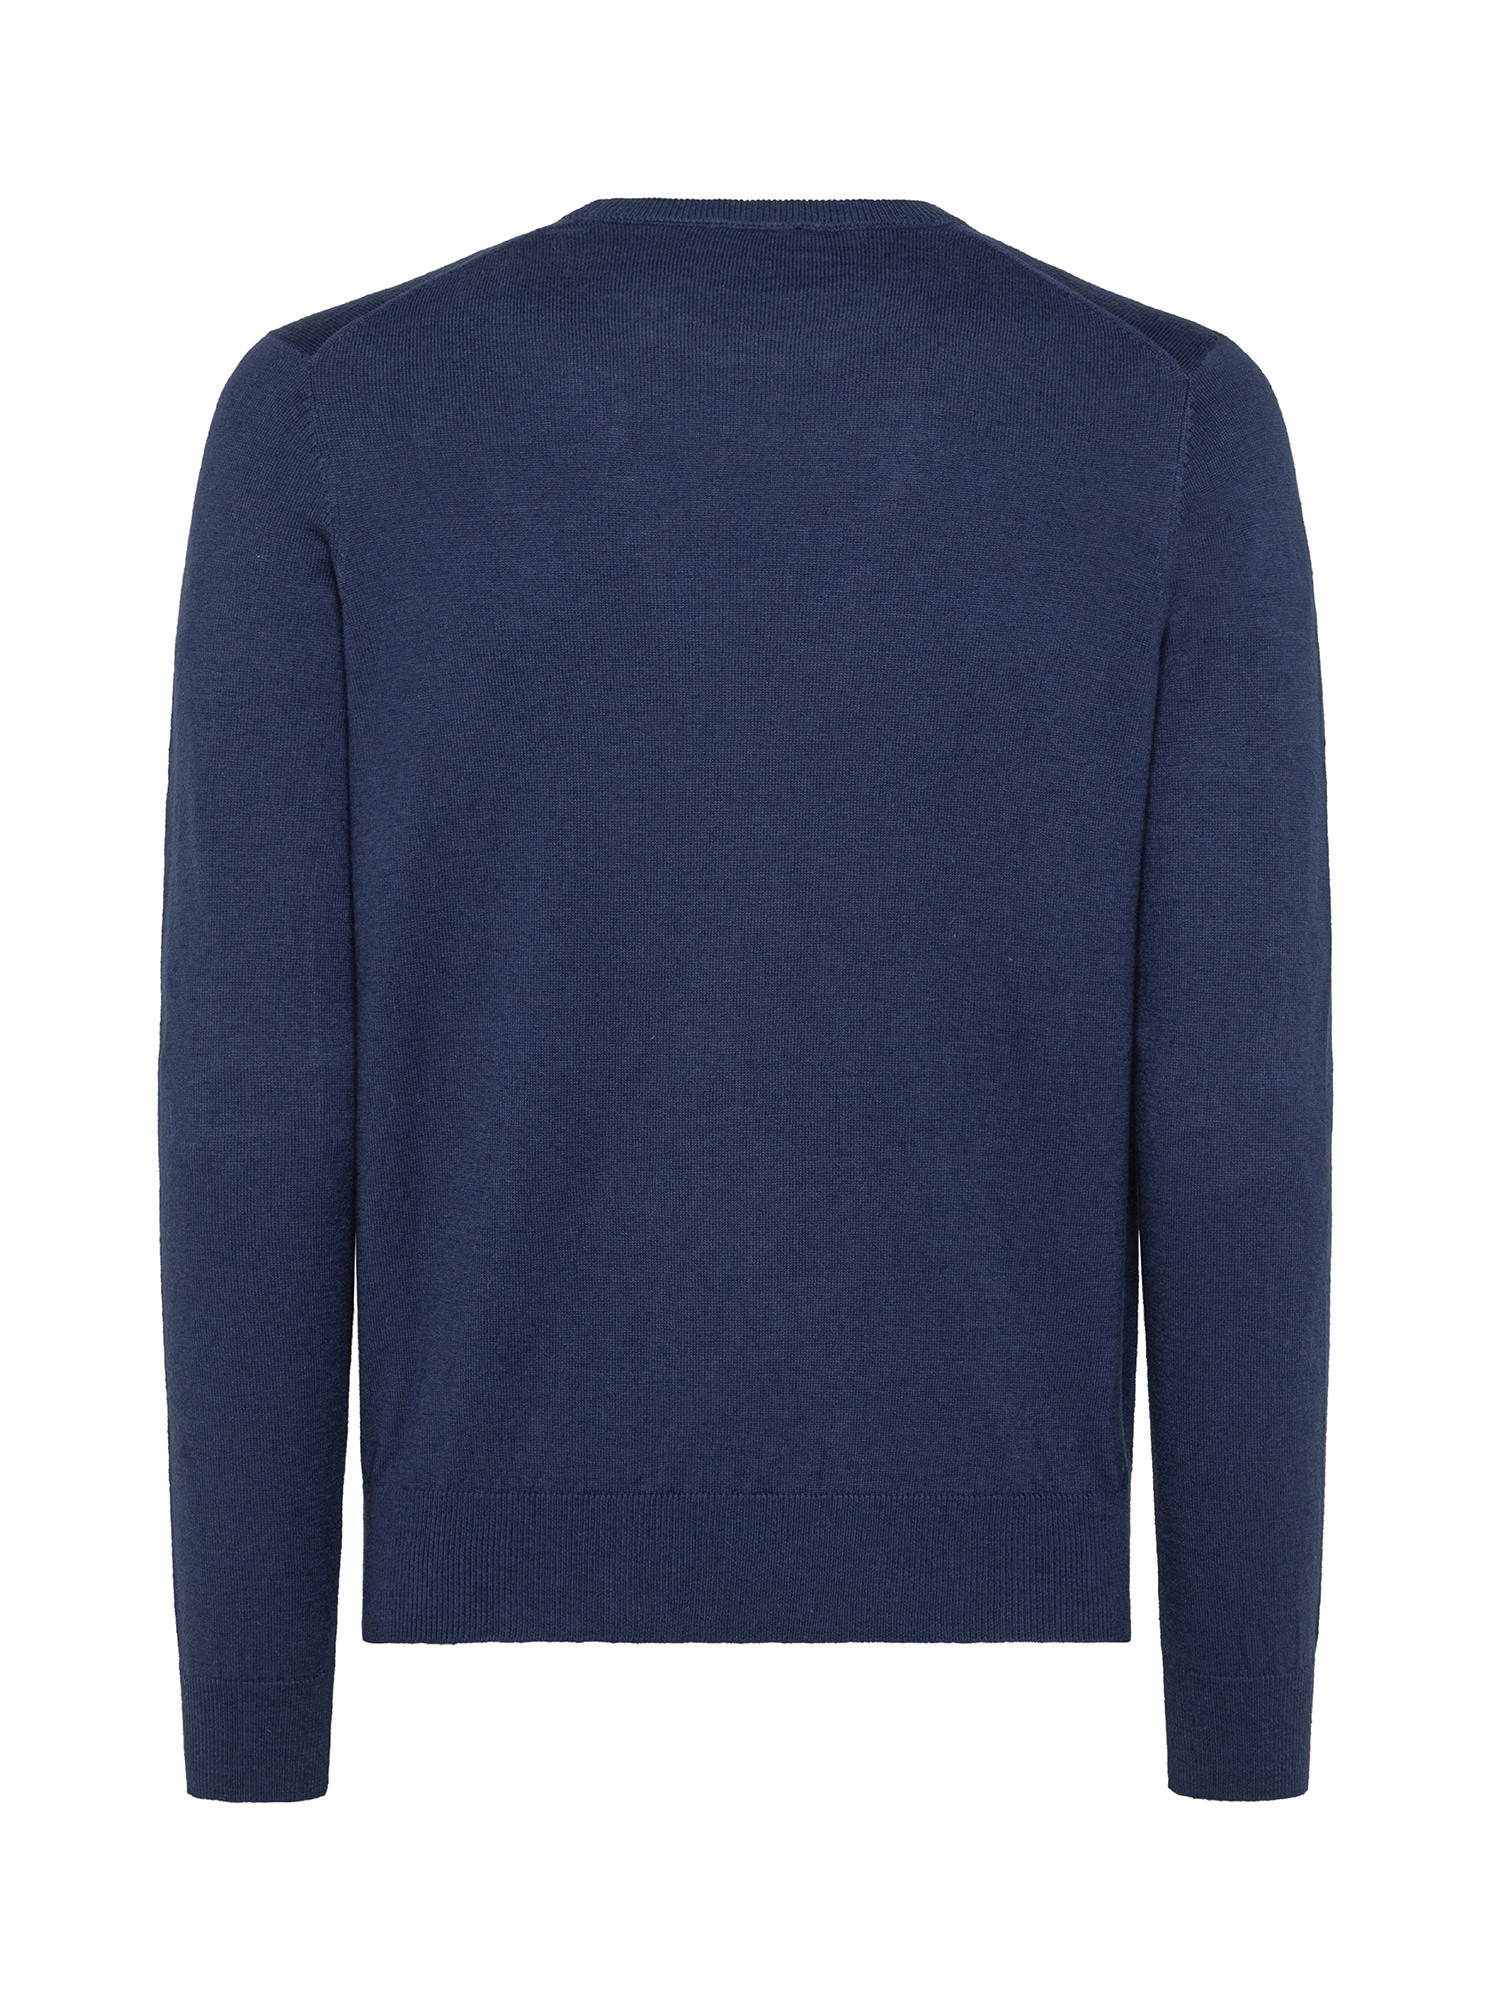 Organic cotton sweatshirt, Denim, large image number 1